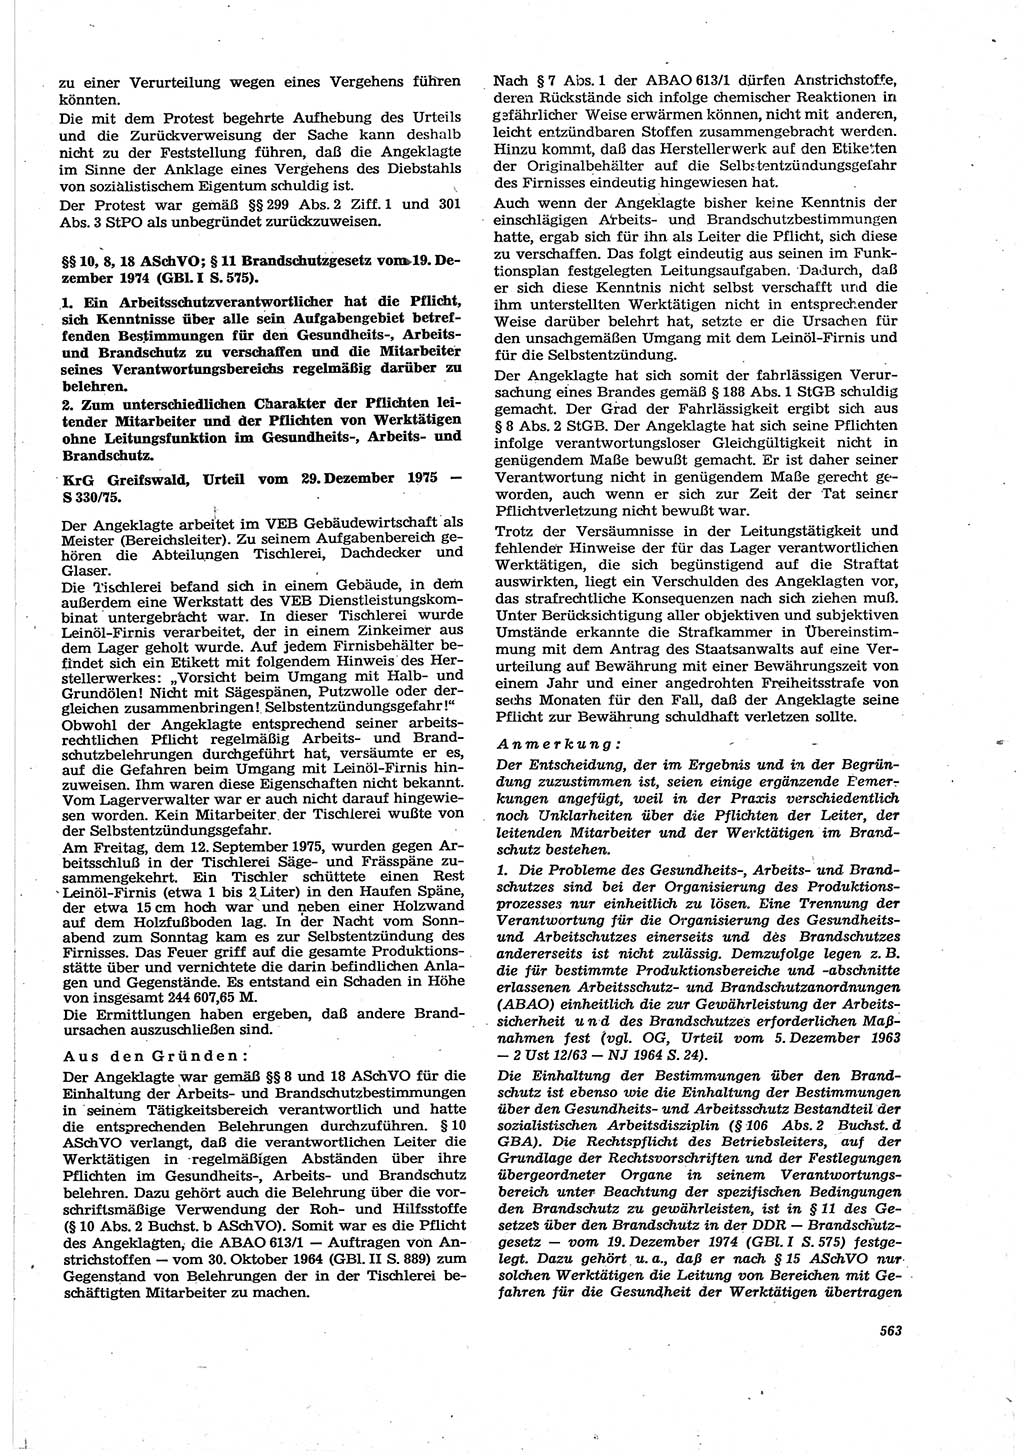 Neue Justiz (NJ), Zeitschrift für Recht und Rechtswissenschaft [Deutsche Demokratische Republik (DDR)], 30. Jahrgang 1976, Seite 563 (NJ DDR 1976, S. 563)